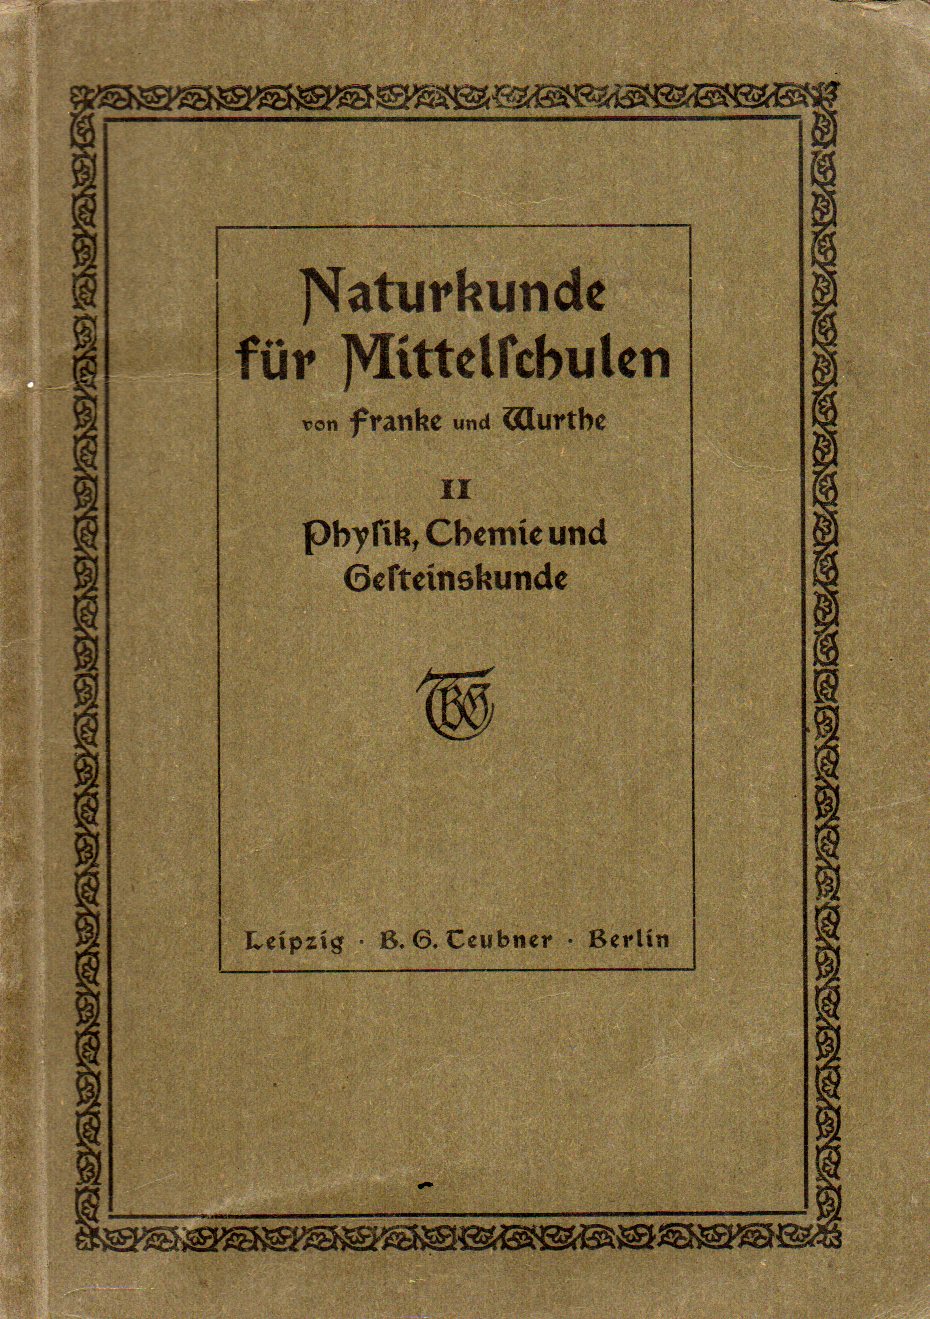 Franke,M.+W.Wurthe  Naturkunde(Physik,Chemie und Mineralogie) 